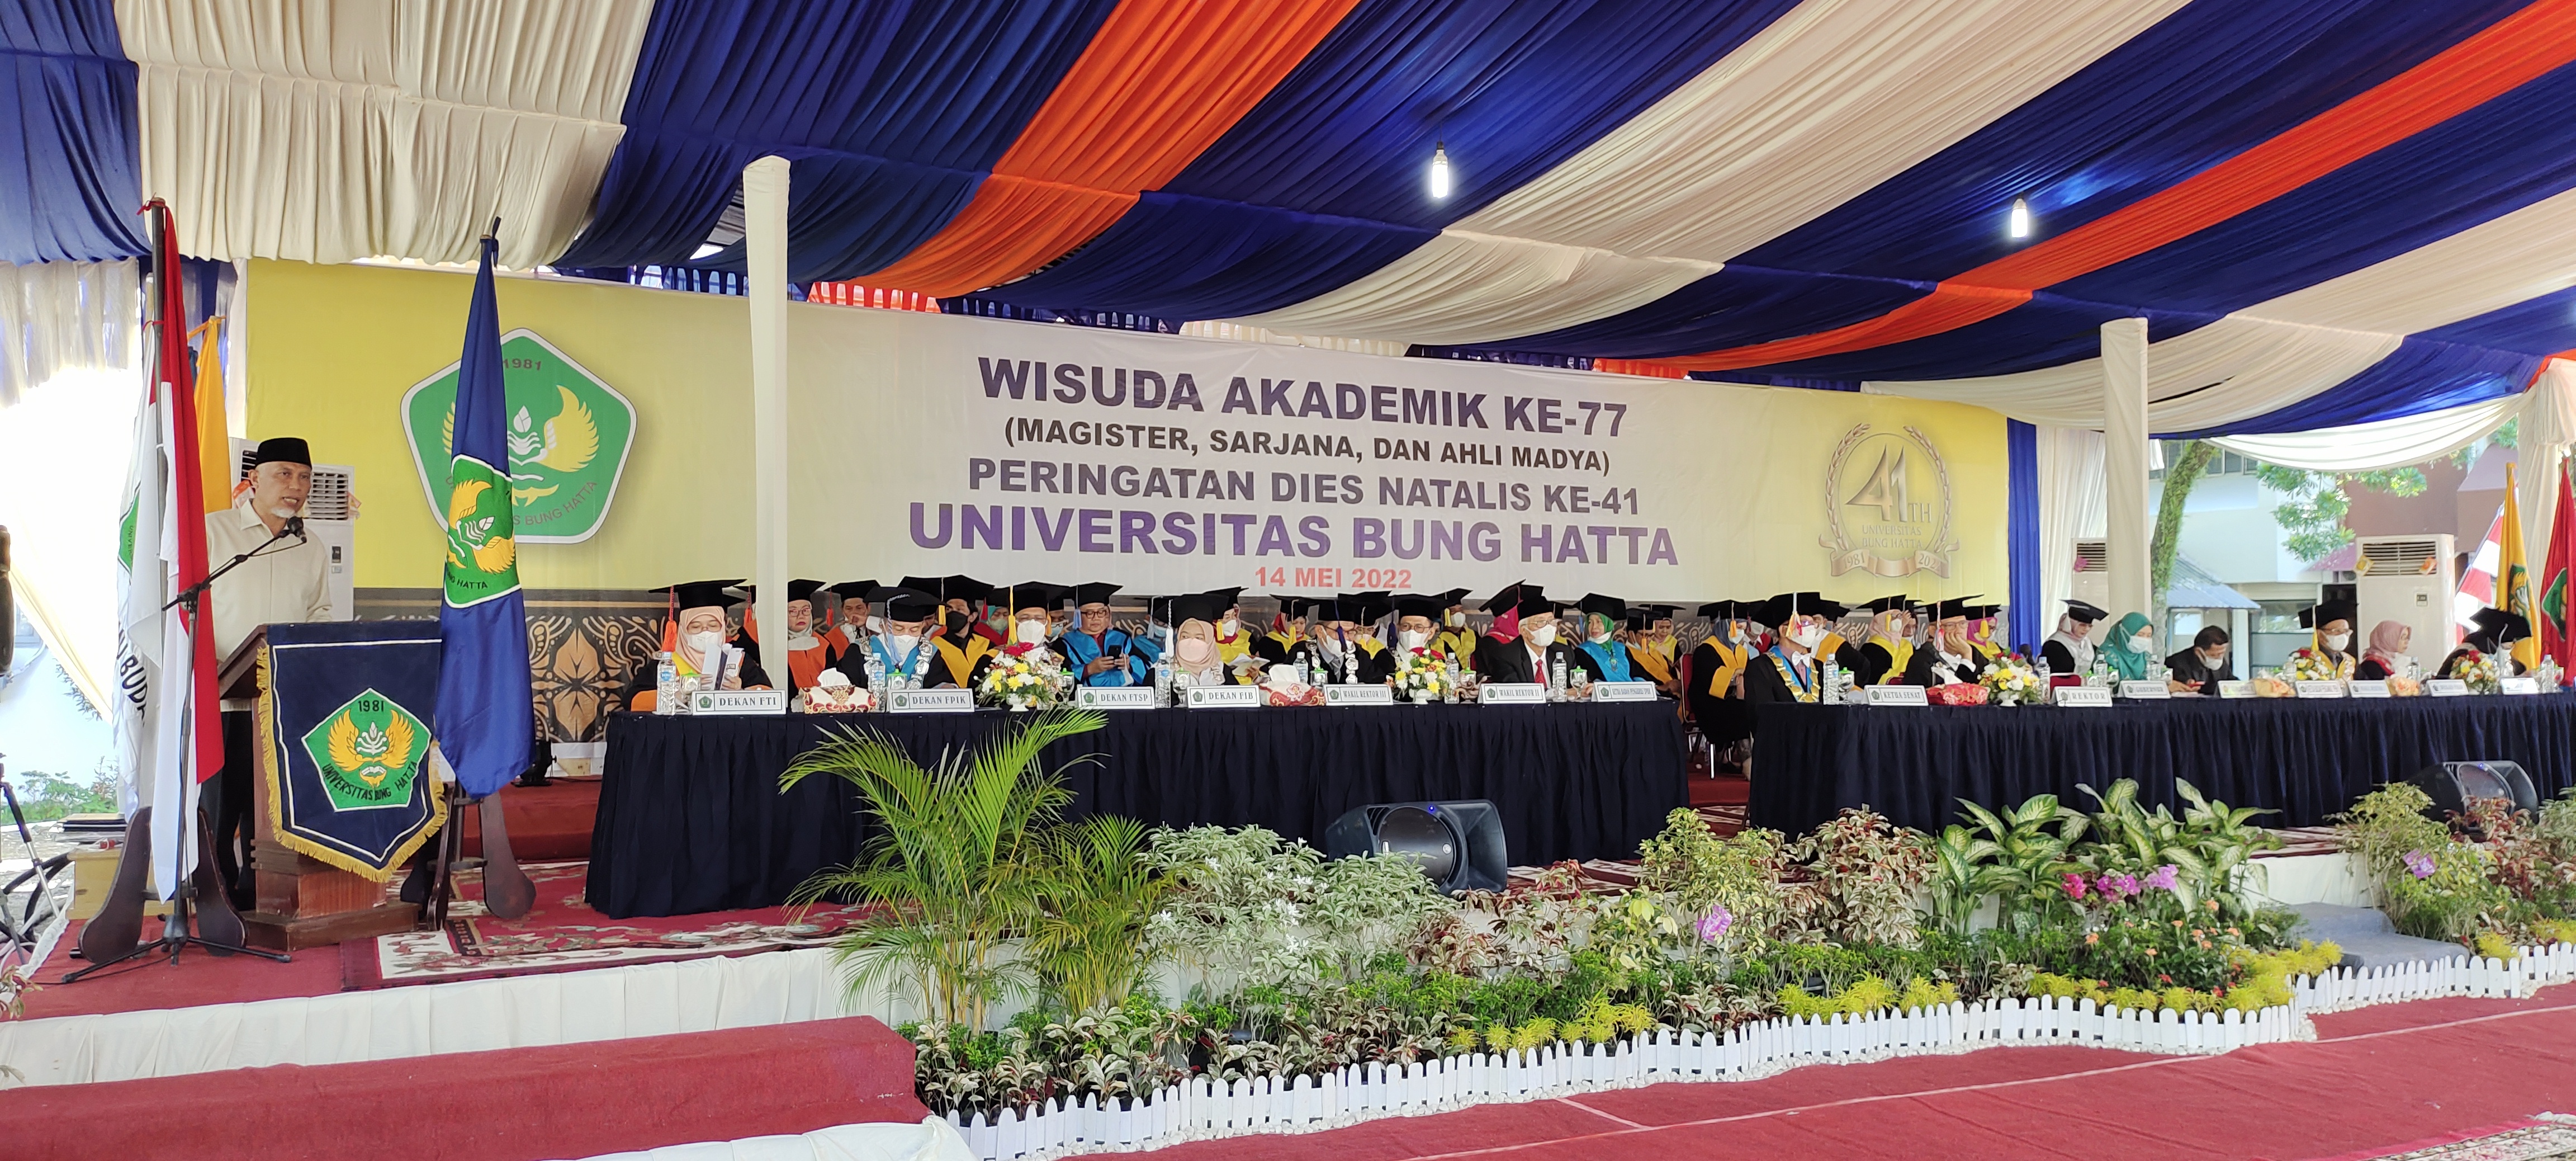 Dies Natalis ke-41 dan Wisuda Akademik ke-77, Gubernur Sumbar: Lulusan Universitas Bung Hatta Harus Bangga dan Menjadi Garda Terdepan